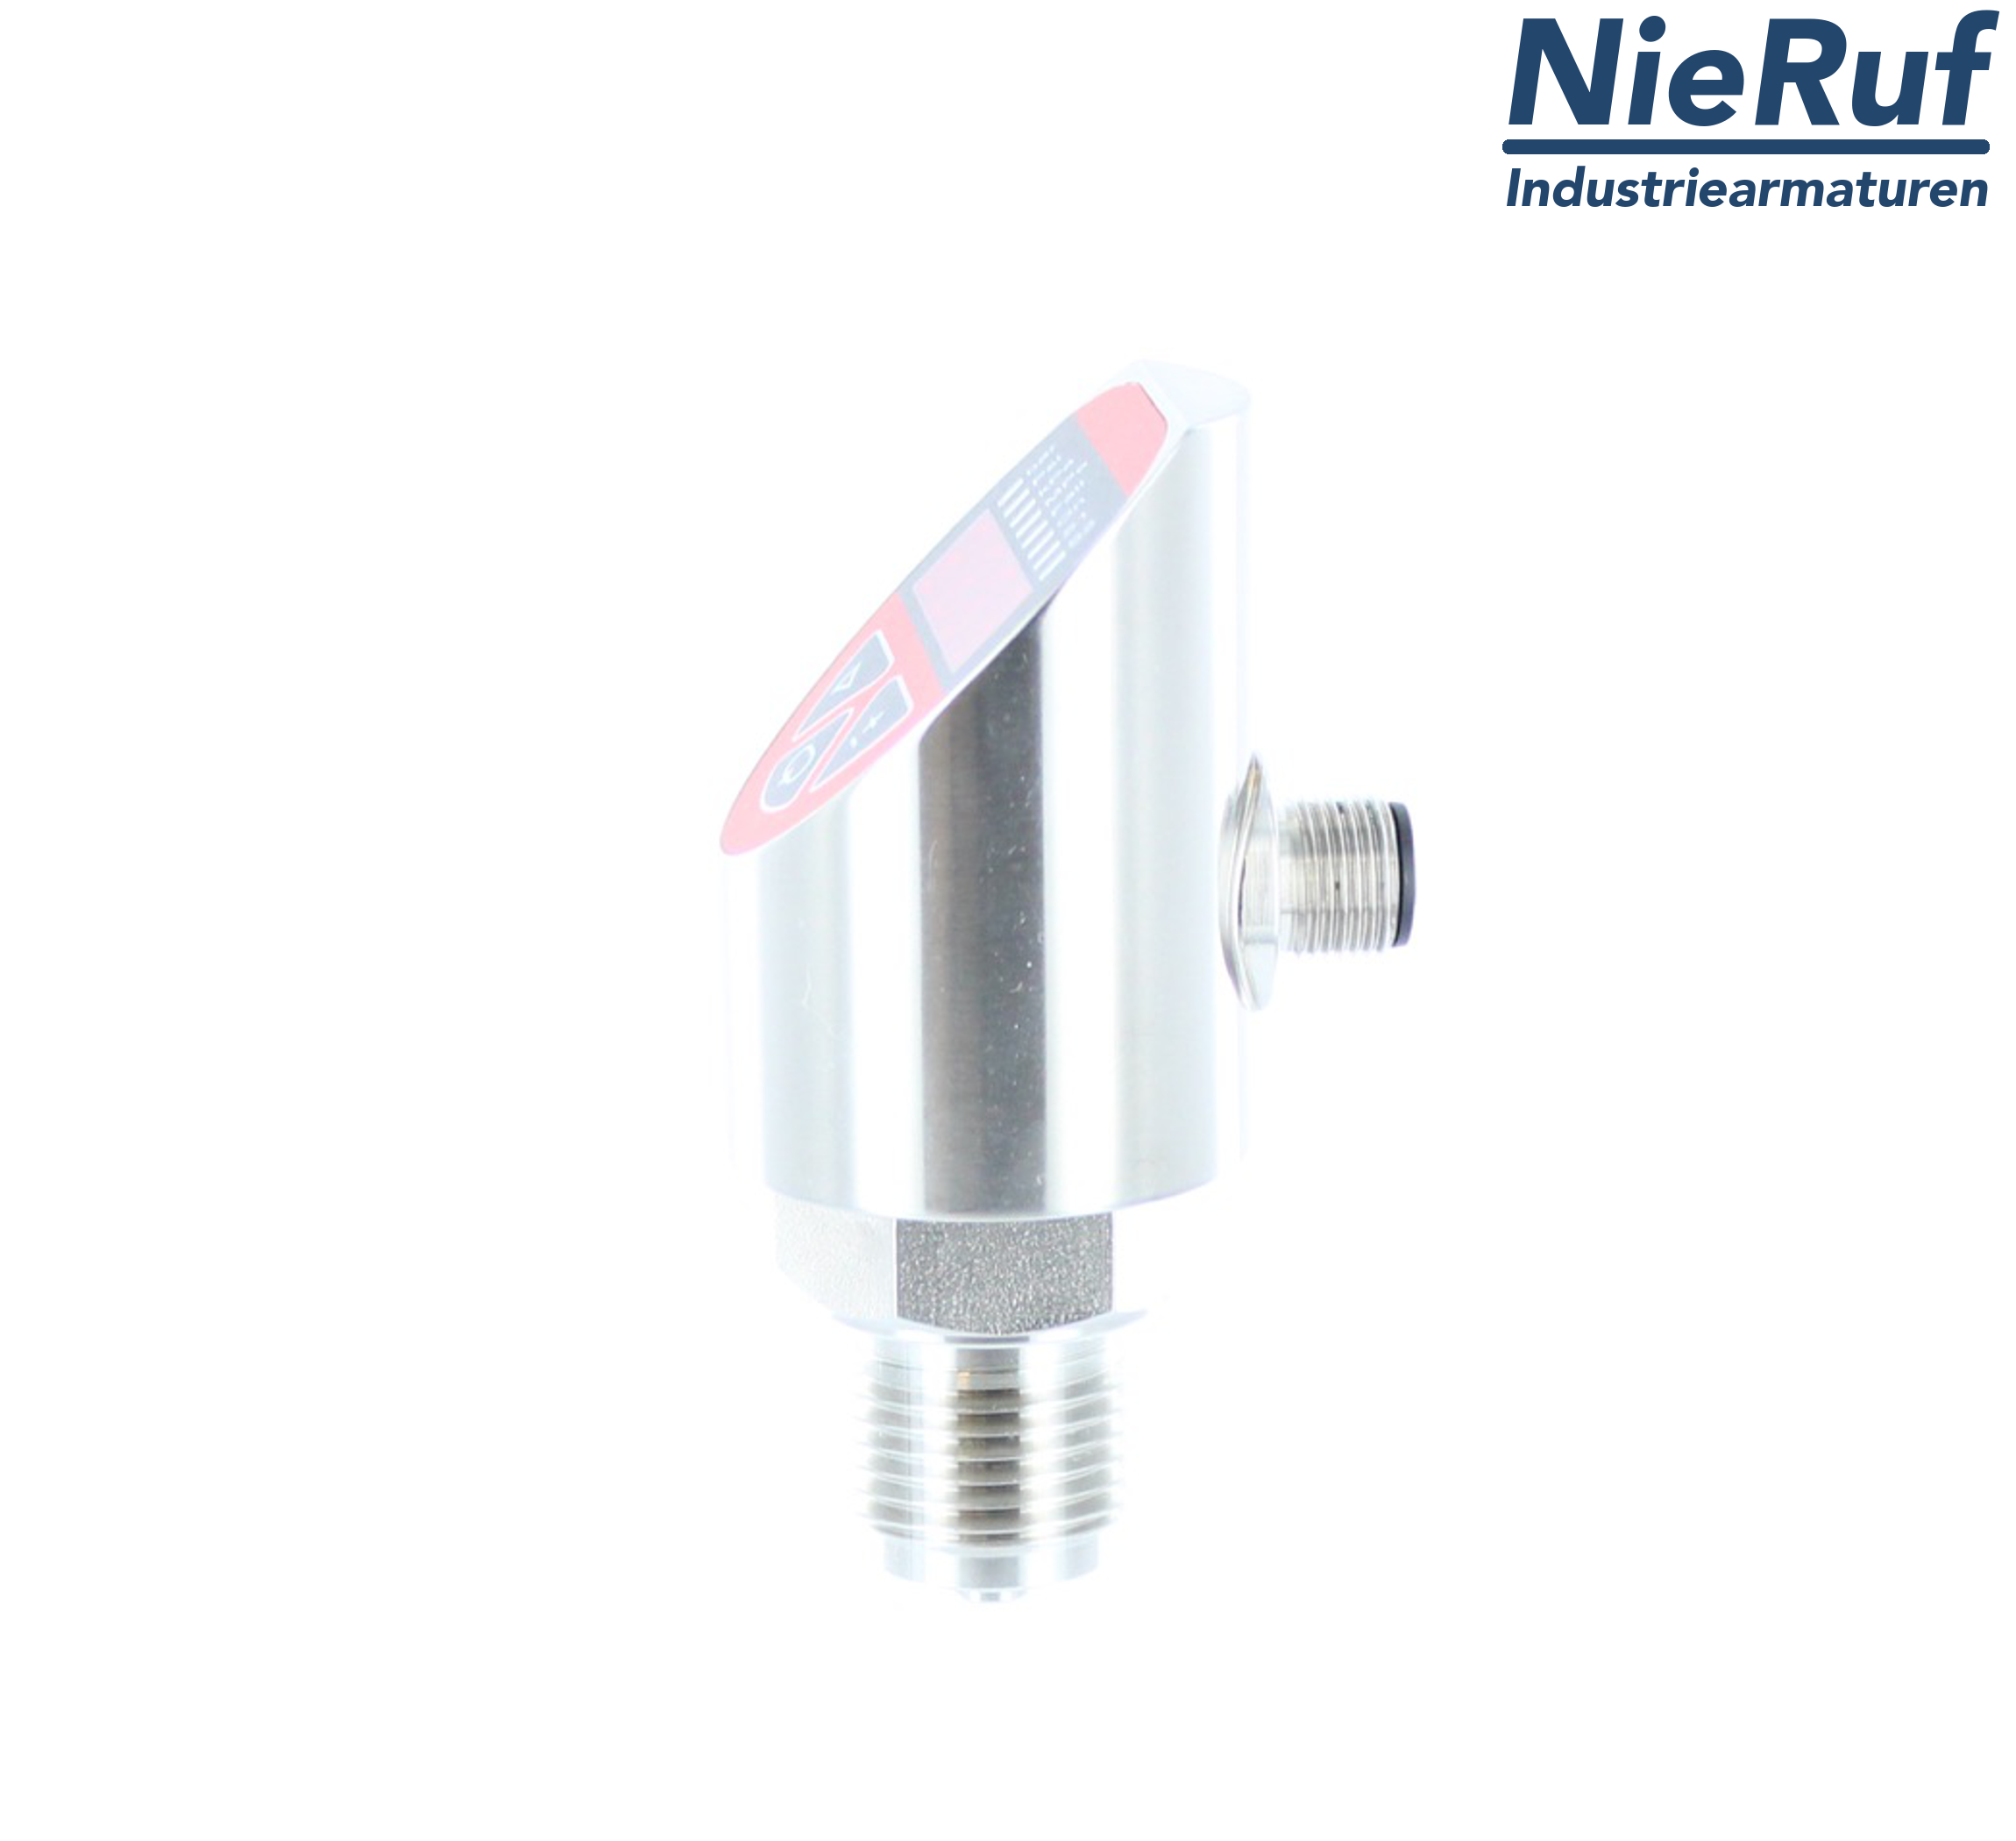 digital pressure sensor G 1/2" B 4-wire: 1xPNP, 1x4 - 20mA, Desina FPM 0,0 - 0,40 bar